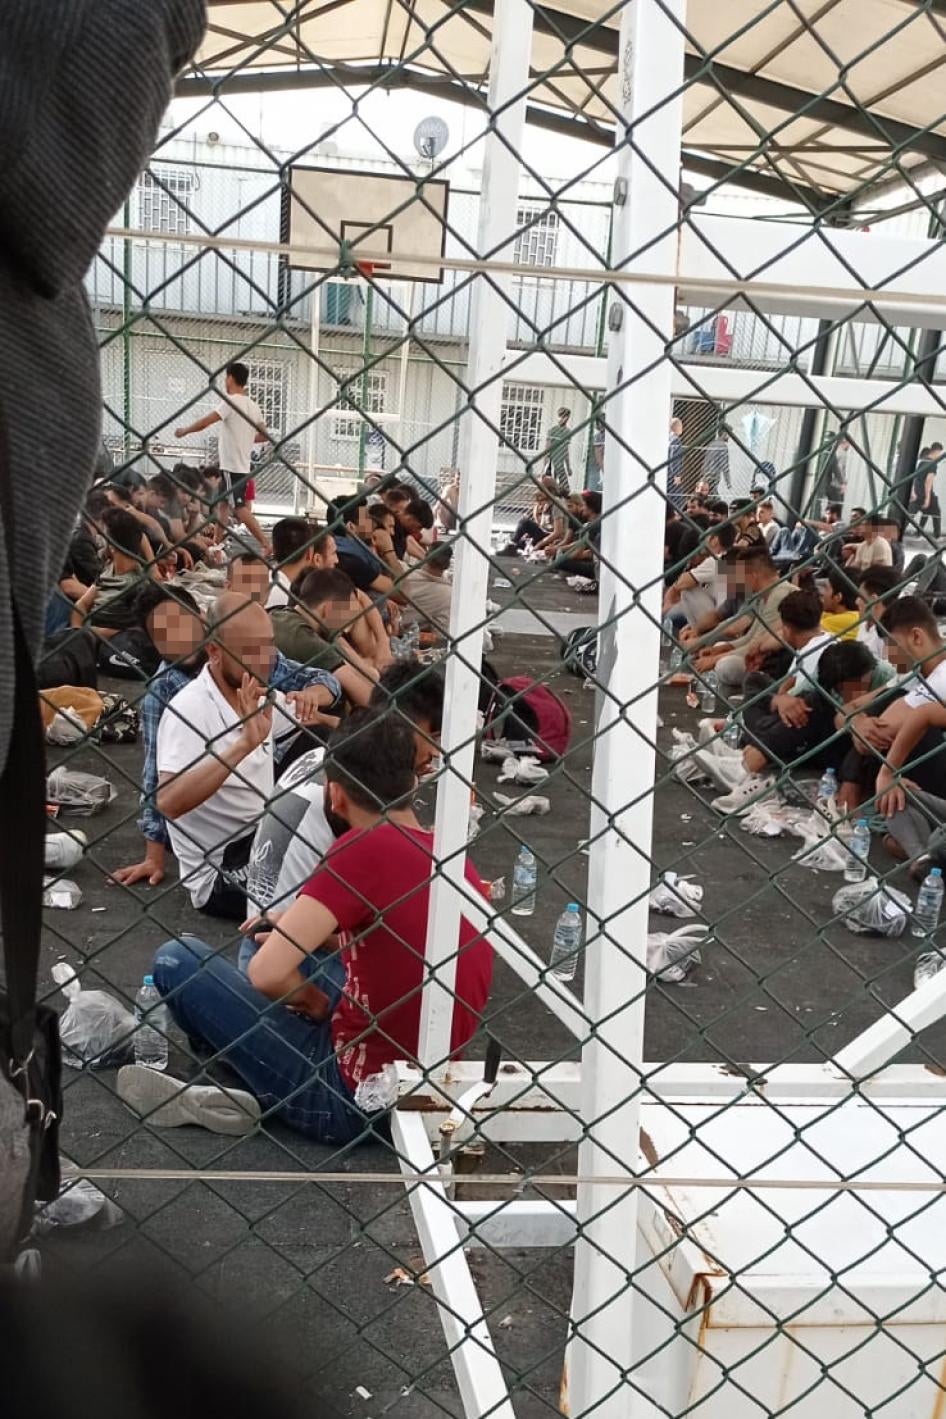 مهاجرون ولاجئون محتجزون في ملعب لكرة السلة لساعات أثناء انتظار زنزانة في مركز الإبعاد في توزلا في يونيو/حزيران 2022.  © 2022 خاص